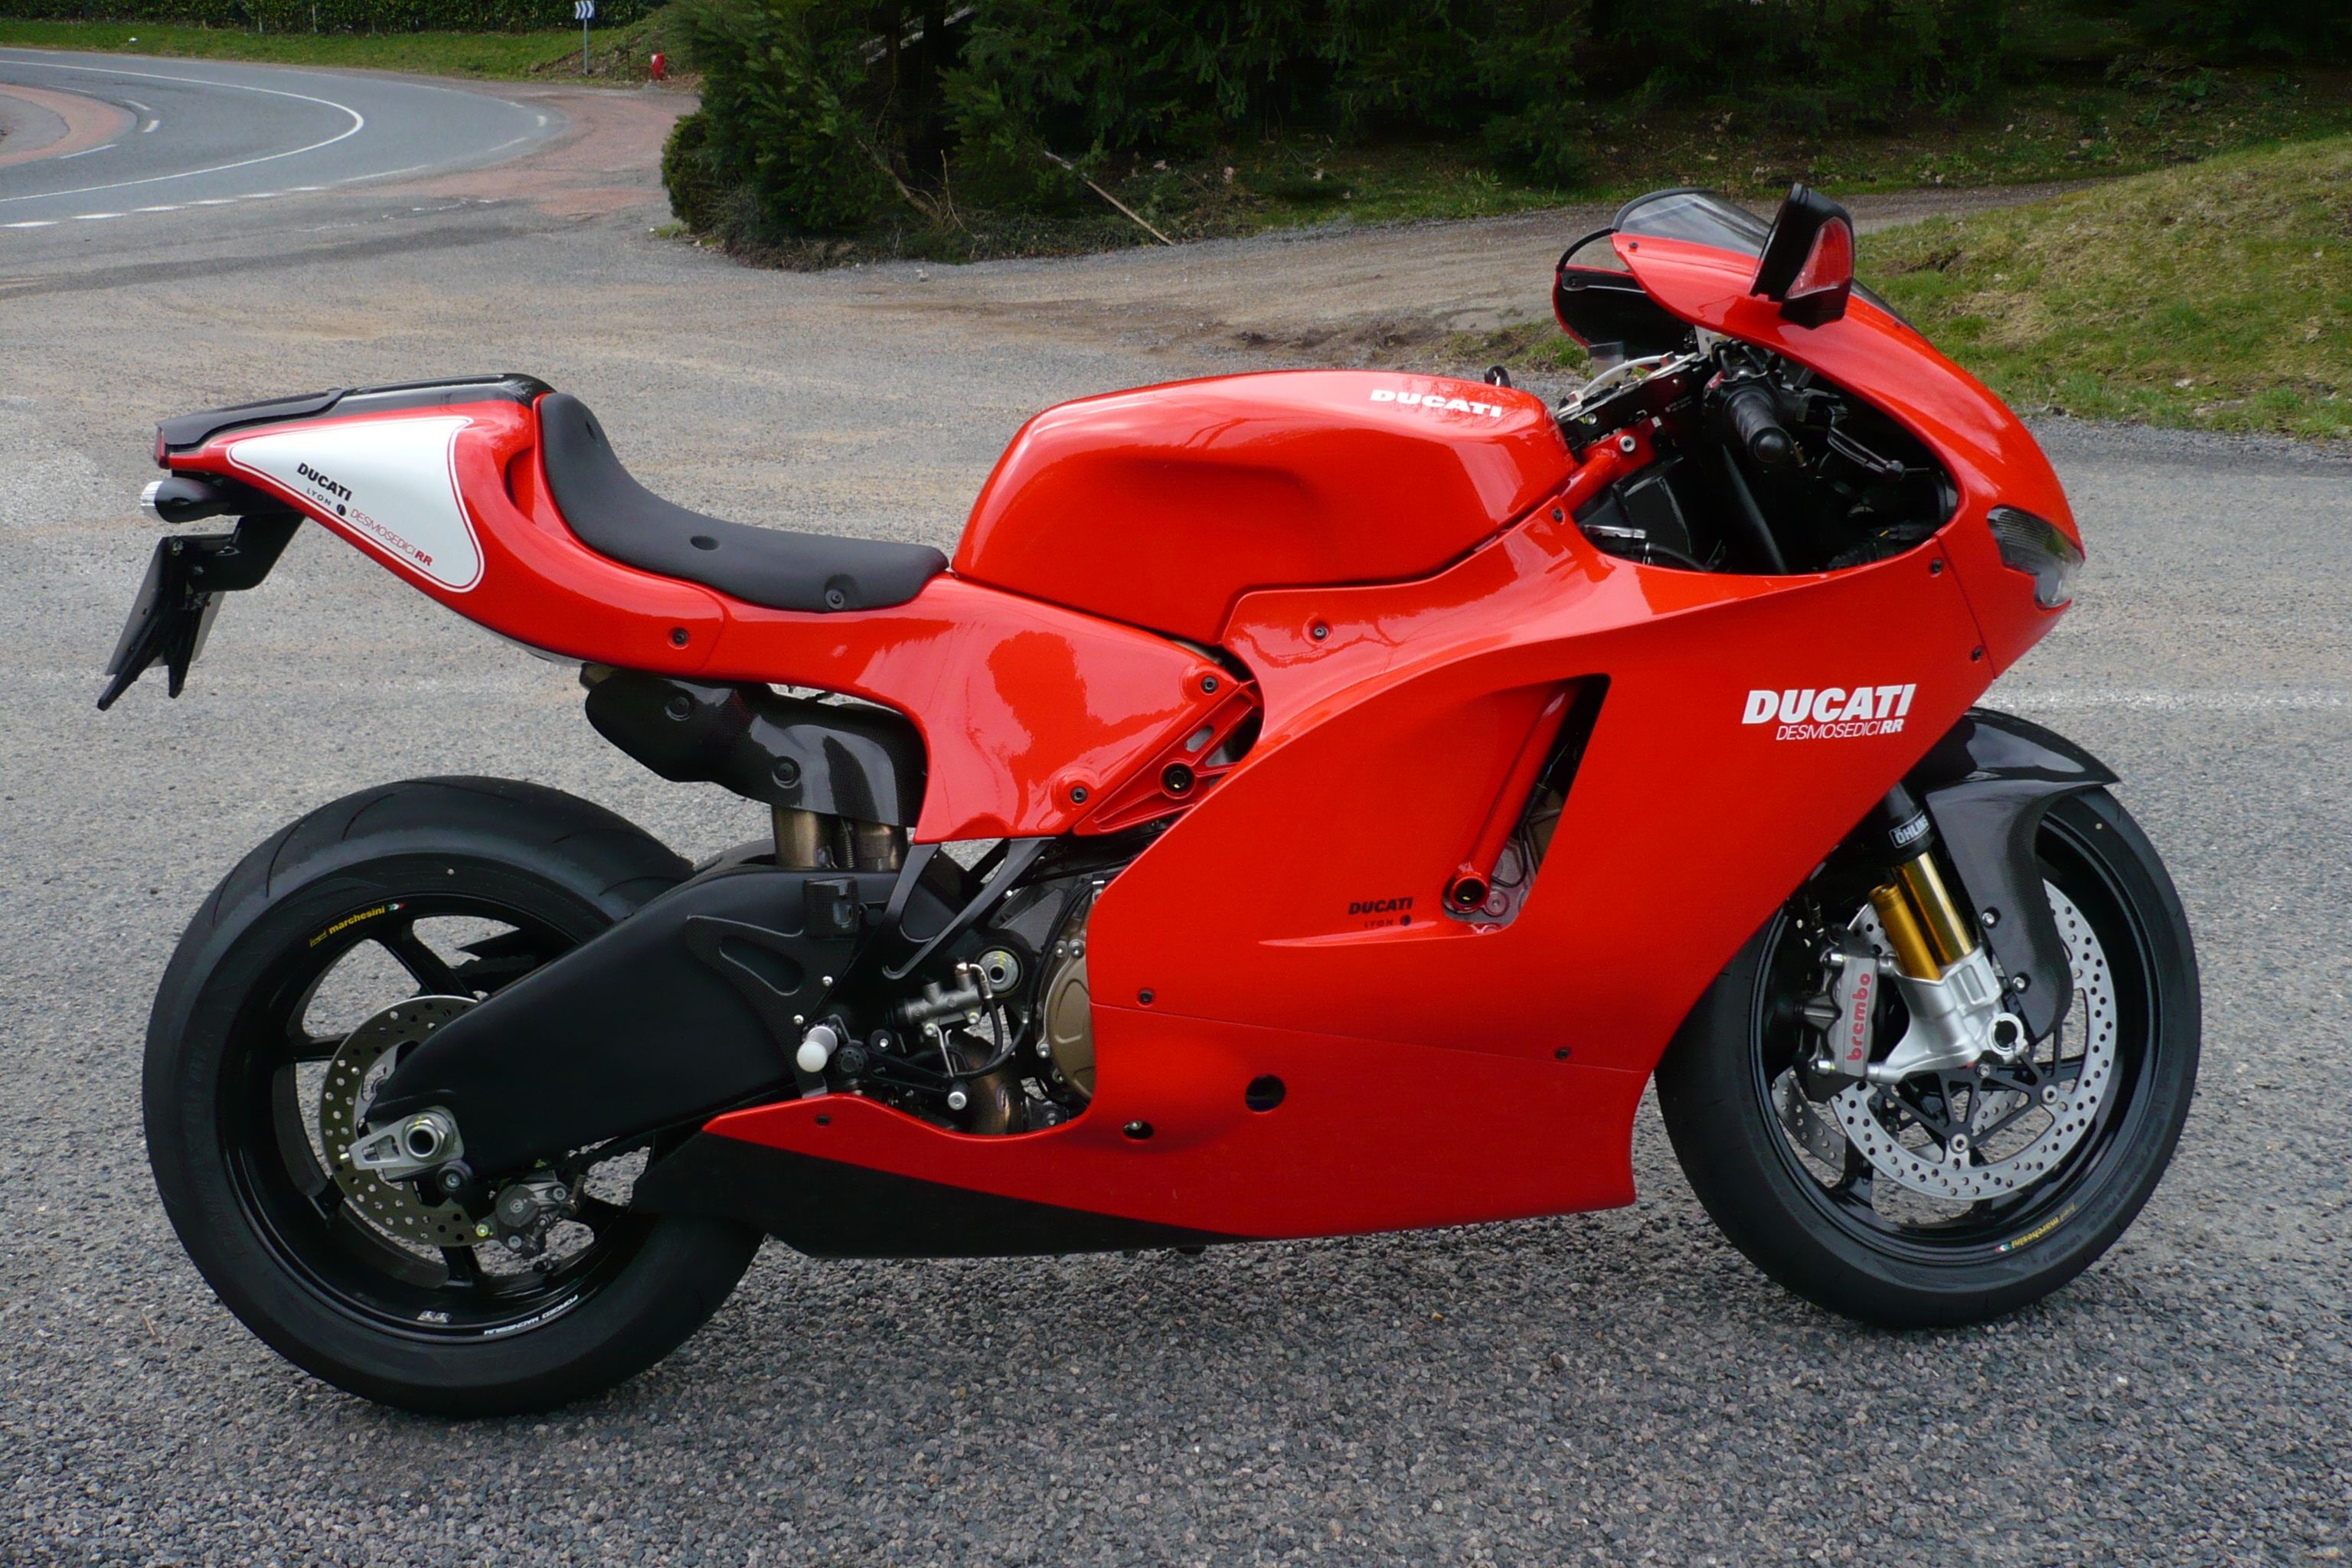 The Ducati Desmosedici RR